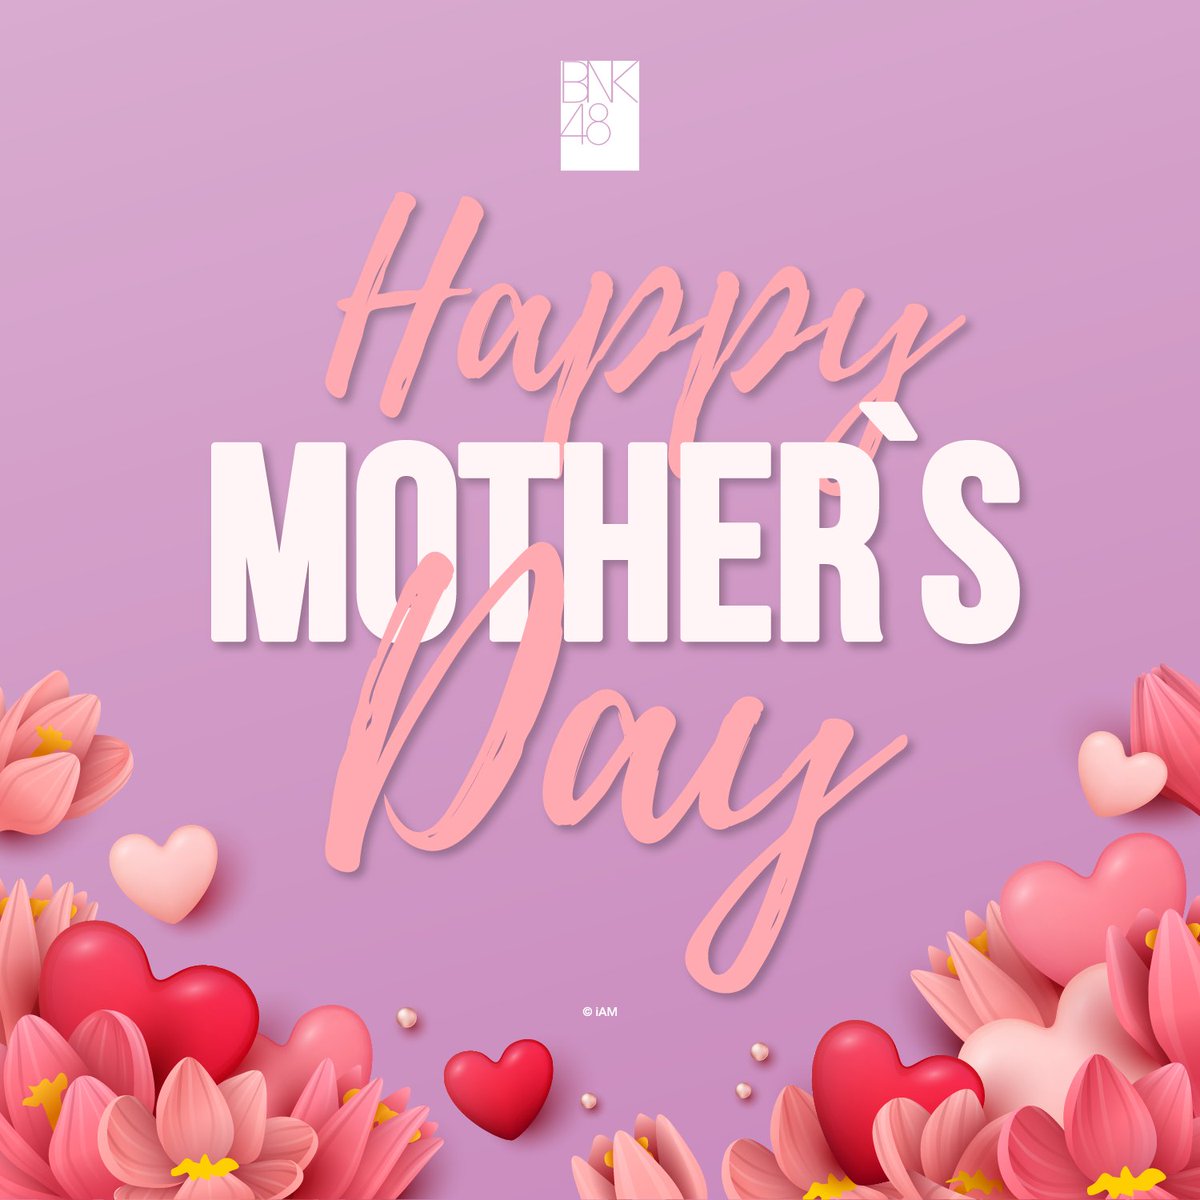 12 สิงหาคม 2022

Happy Mother's Day
สุขสันต์วันแม่ประจำปี 2022 นะคะ

ขอให้ทุกคนมีความสุขกับครอบครัวในวันหยุดยาวเนื่องในวันแม่ด้วยนะคะ

#HappyMothersDay2022
#BNK48